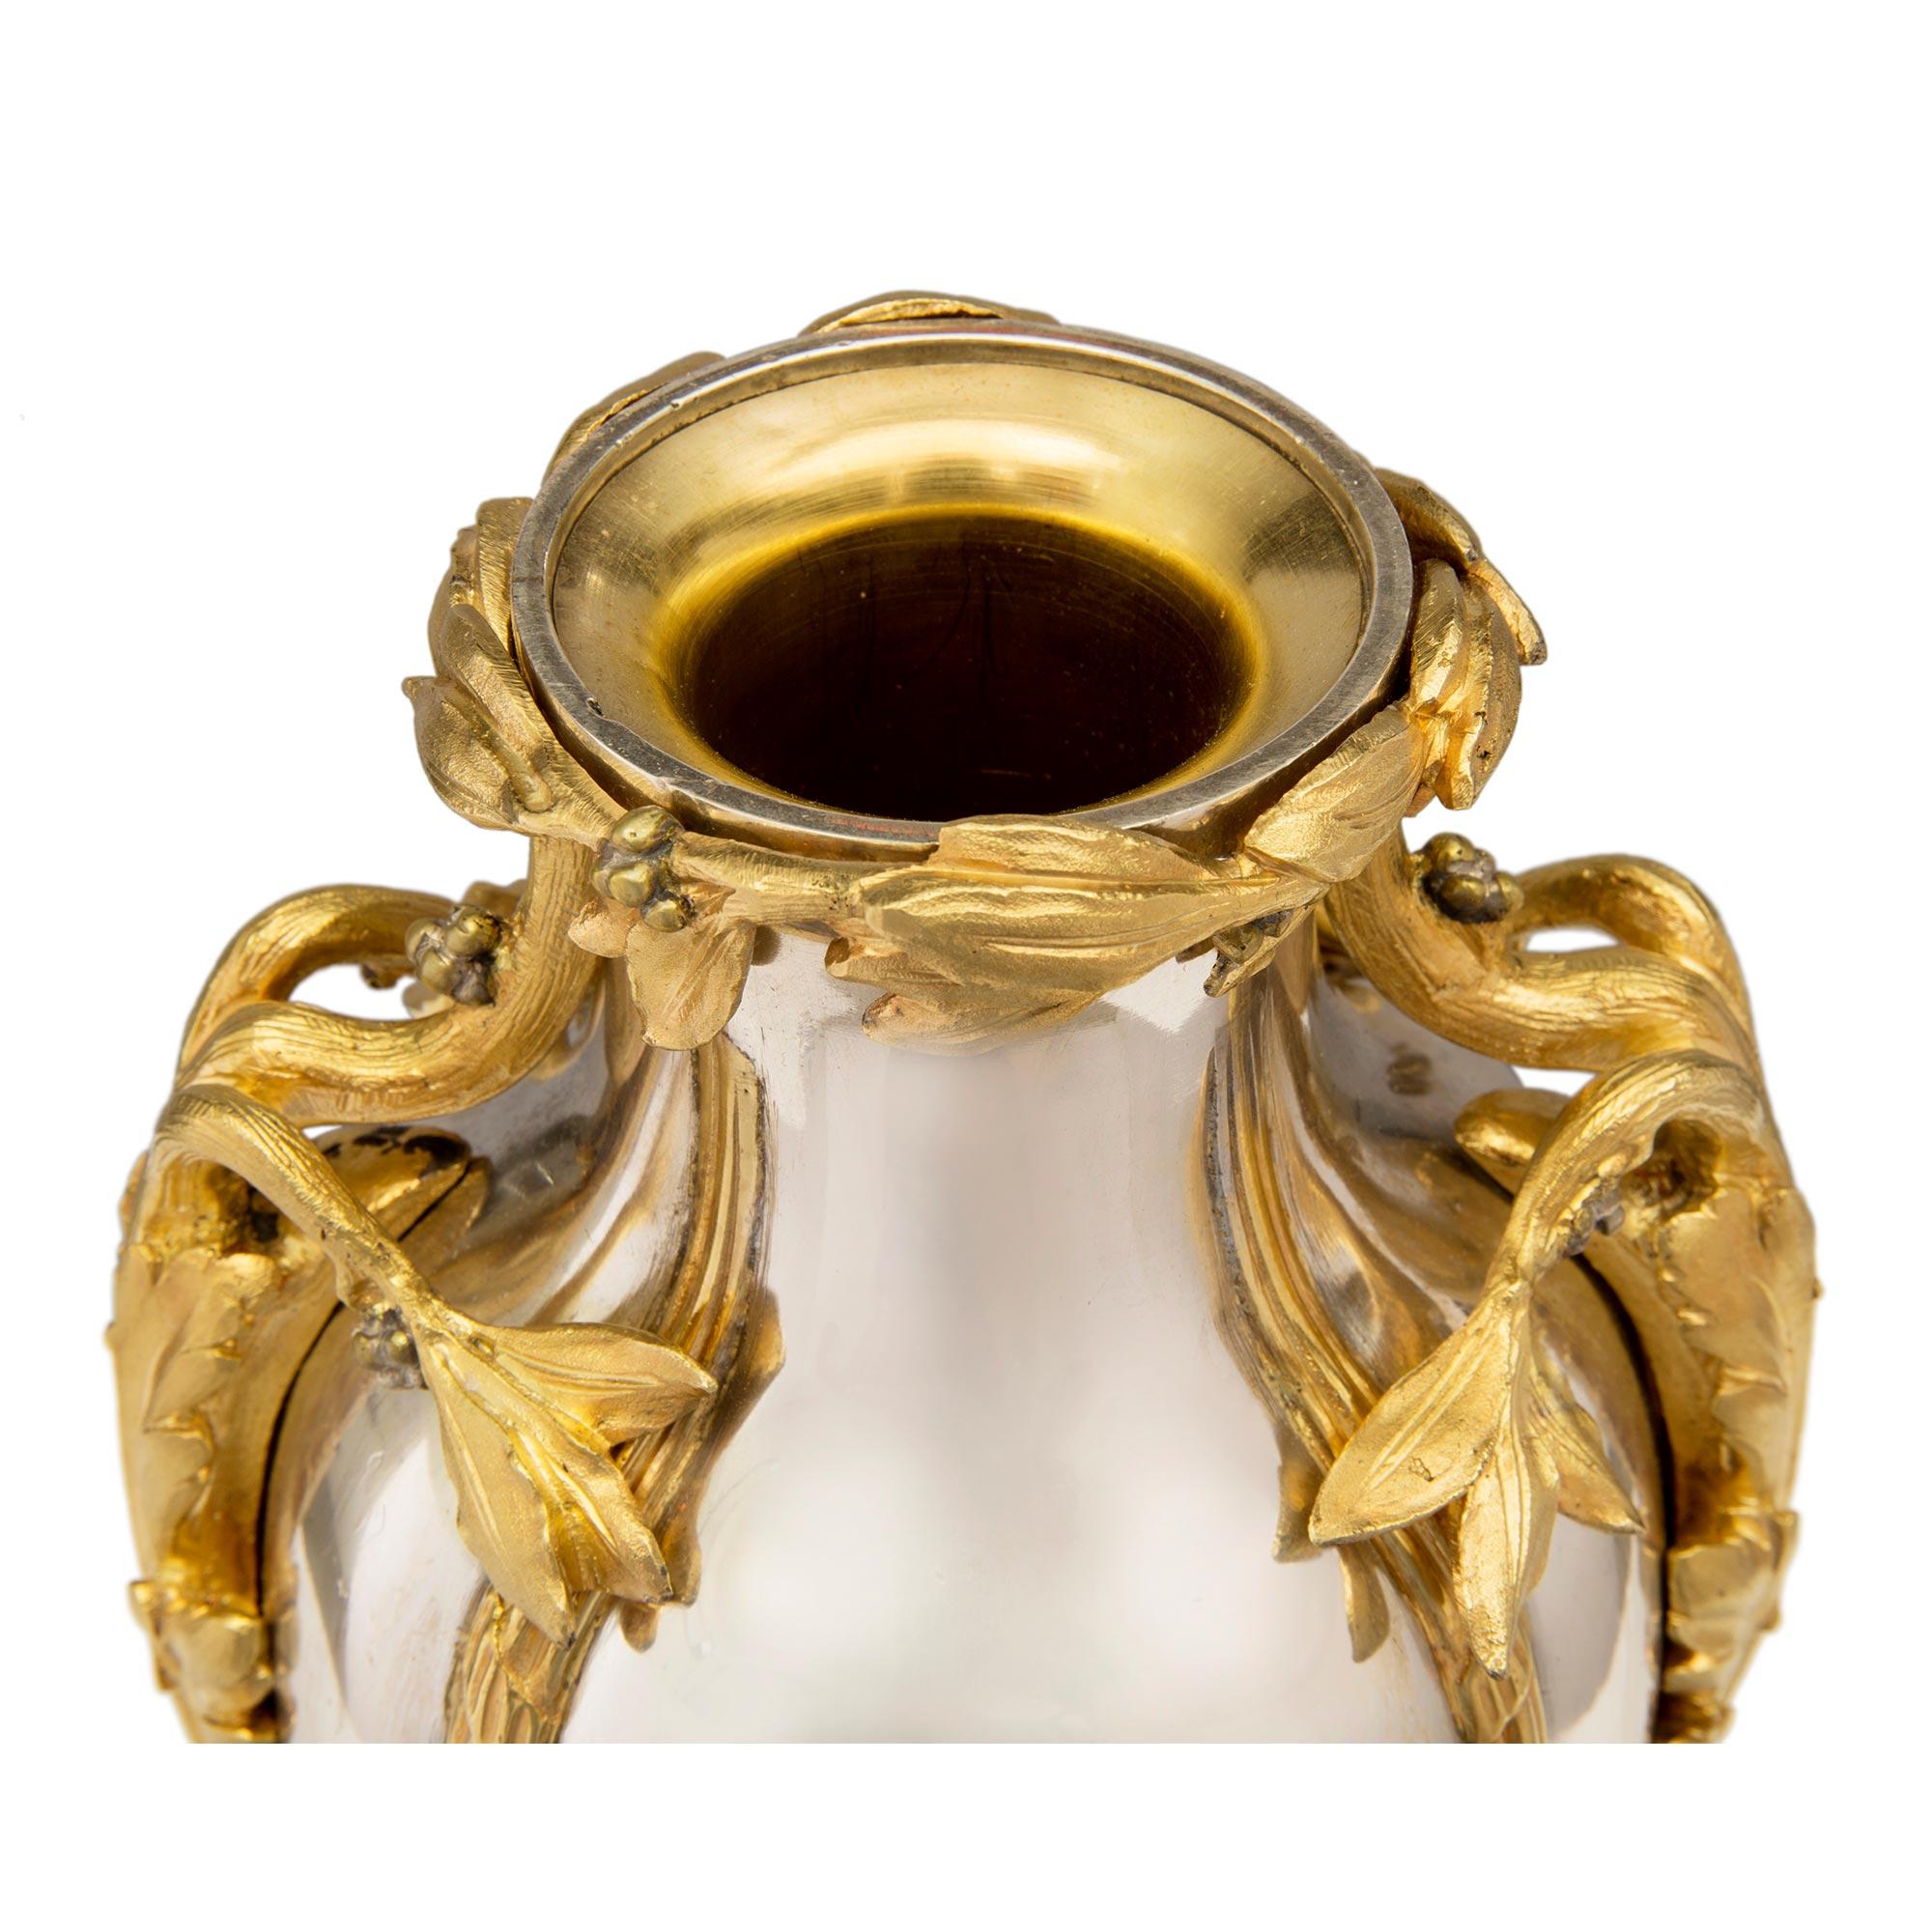 Une étonnante et extrêmement élégante paire d'urnes à couvercle en bronze argenté et bronze doré de style Louis XVI du XIXe siècle, attribuée à A. Ermane. Chaque urne est surélevée par une base carrée en bronze argenté, dont les quatre pieds